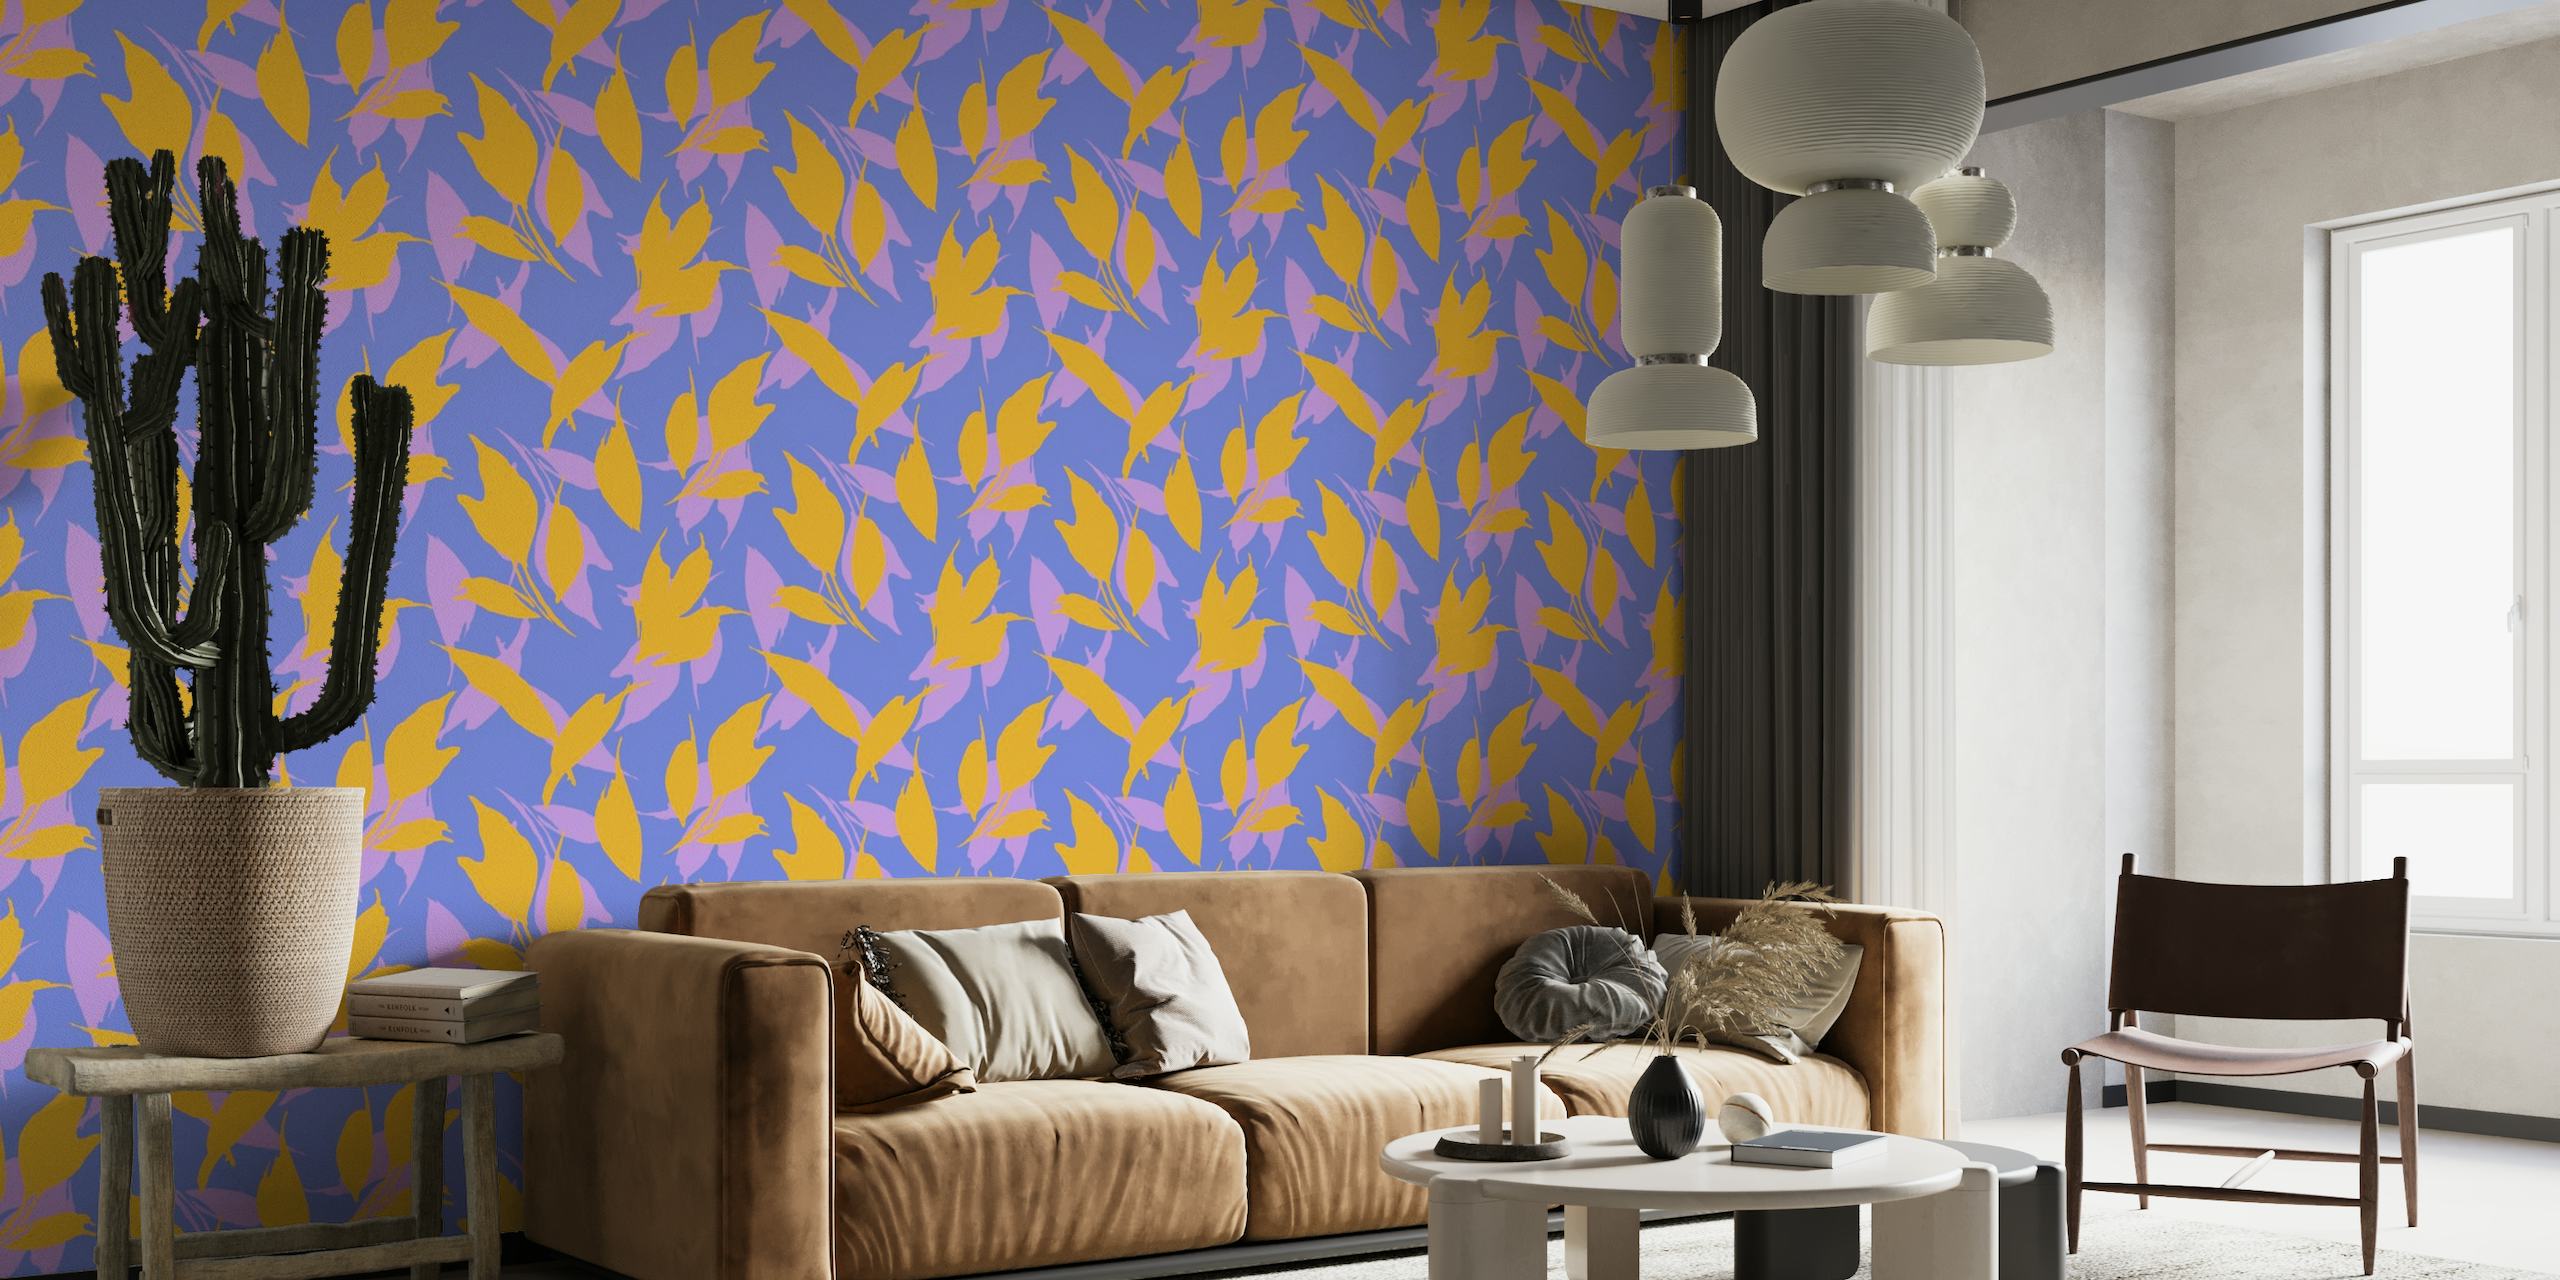 Zidna slika s botaničkim lišćem u ljubičastoj i žutoj boji